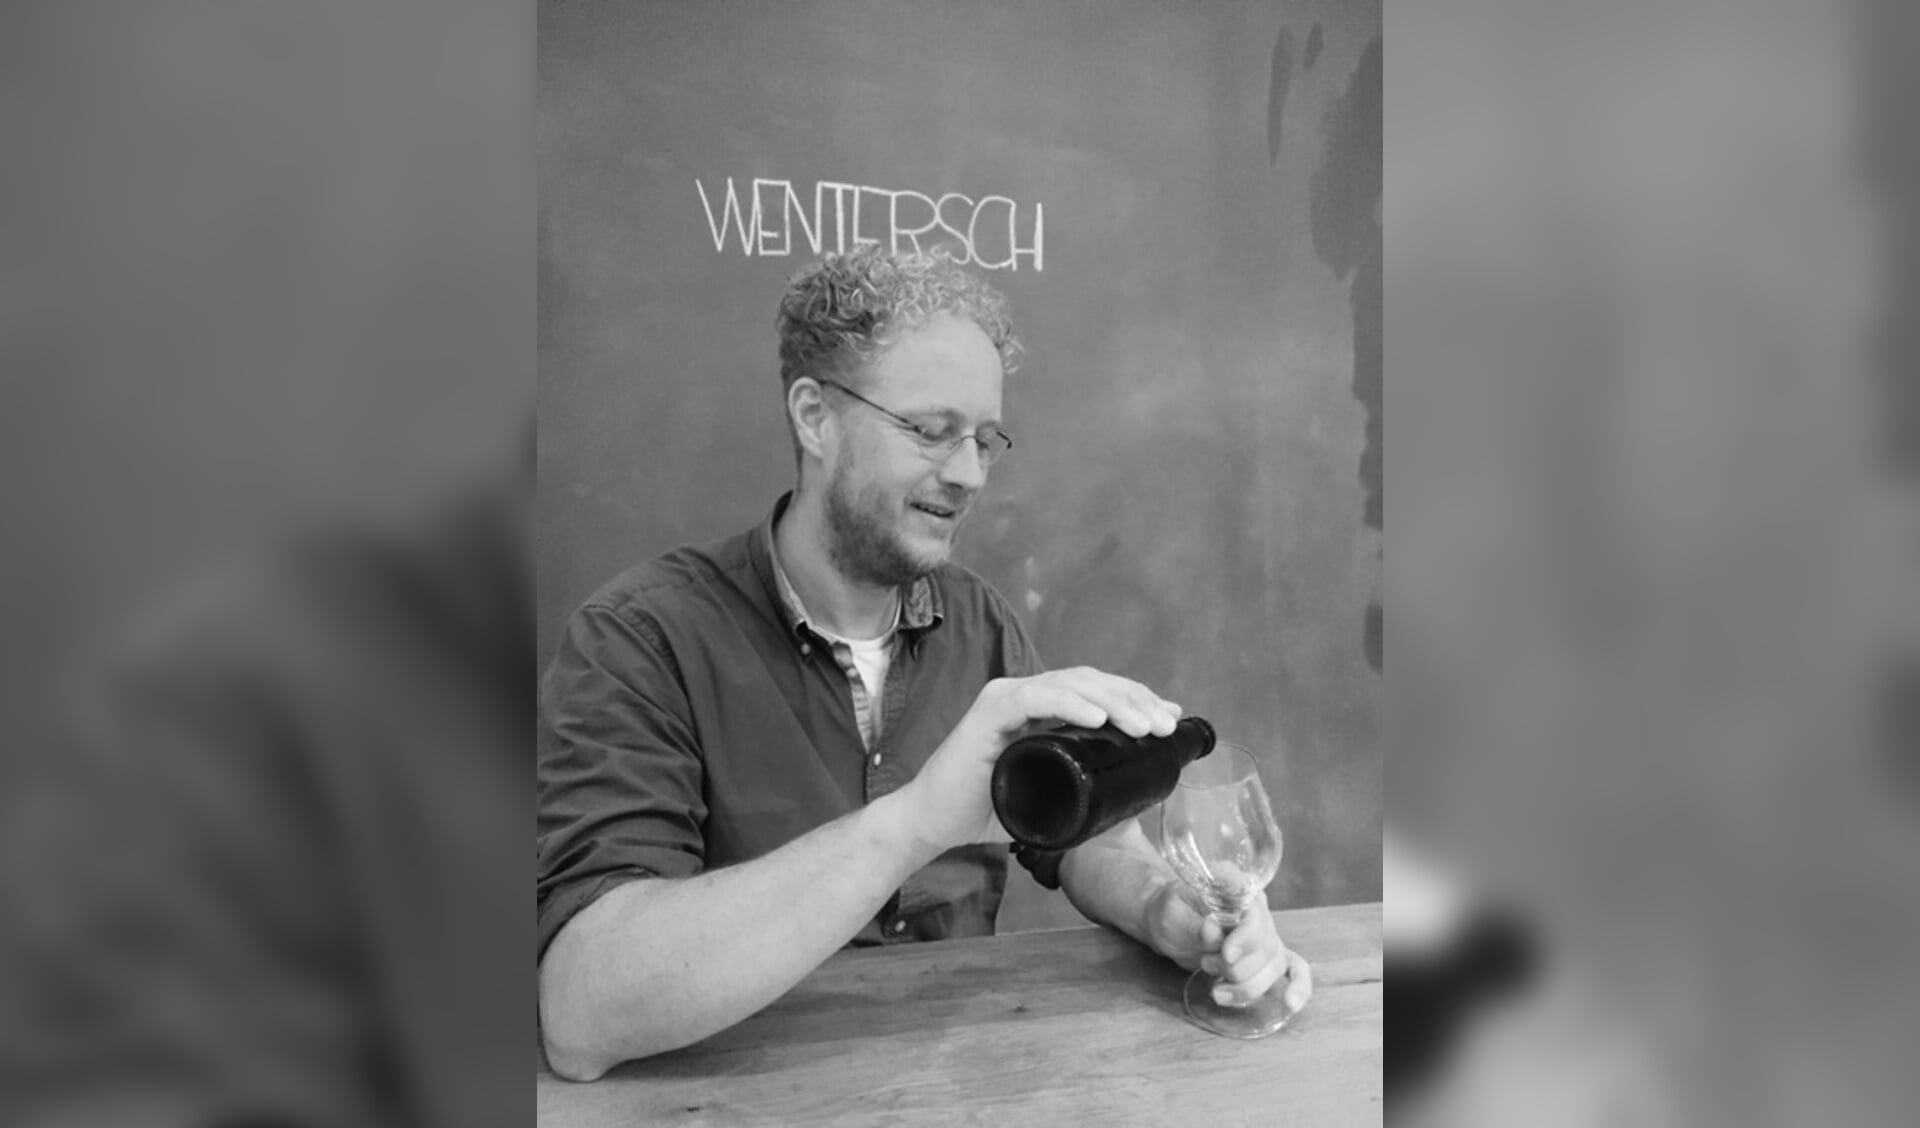 Michiel van der Vaart brouwt Wentersch bier. Hij verwacht in 2017 gerstenat vanuit zijn eigen brouwerij te verkopen. Foto: PR